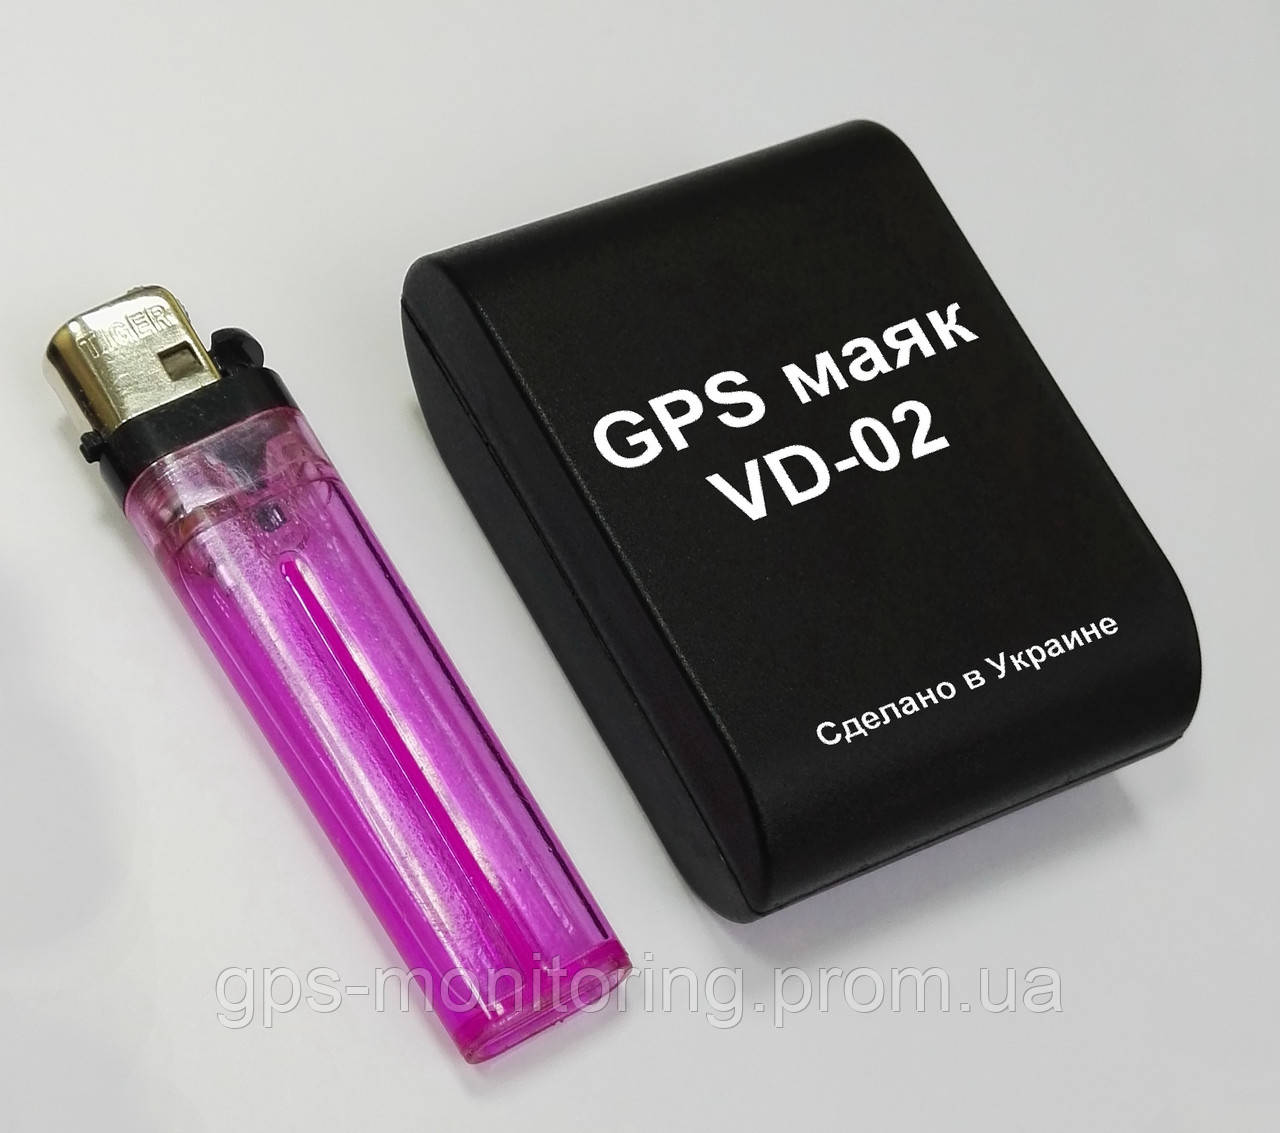 GPS маяк "VD-02" — охоронний пристрій